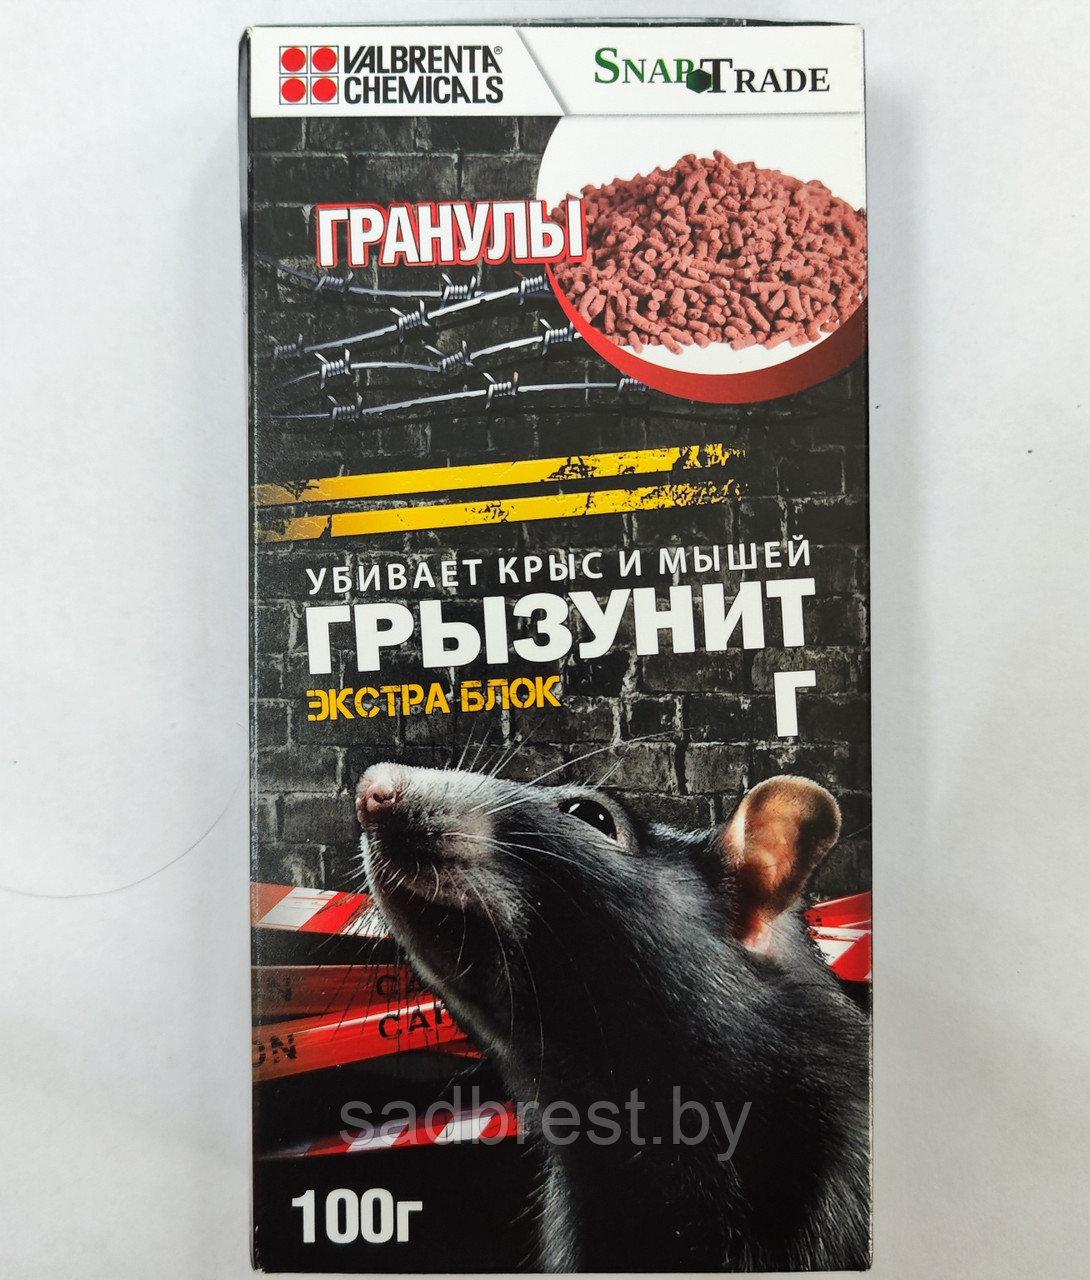 Средство от крыс и мышей Грызунит Экстра Блок Г (гранулы) 100 гр